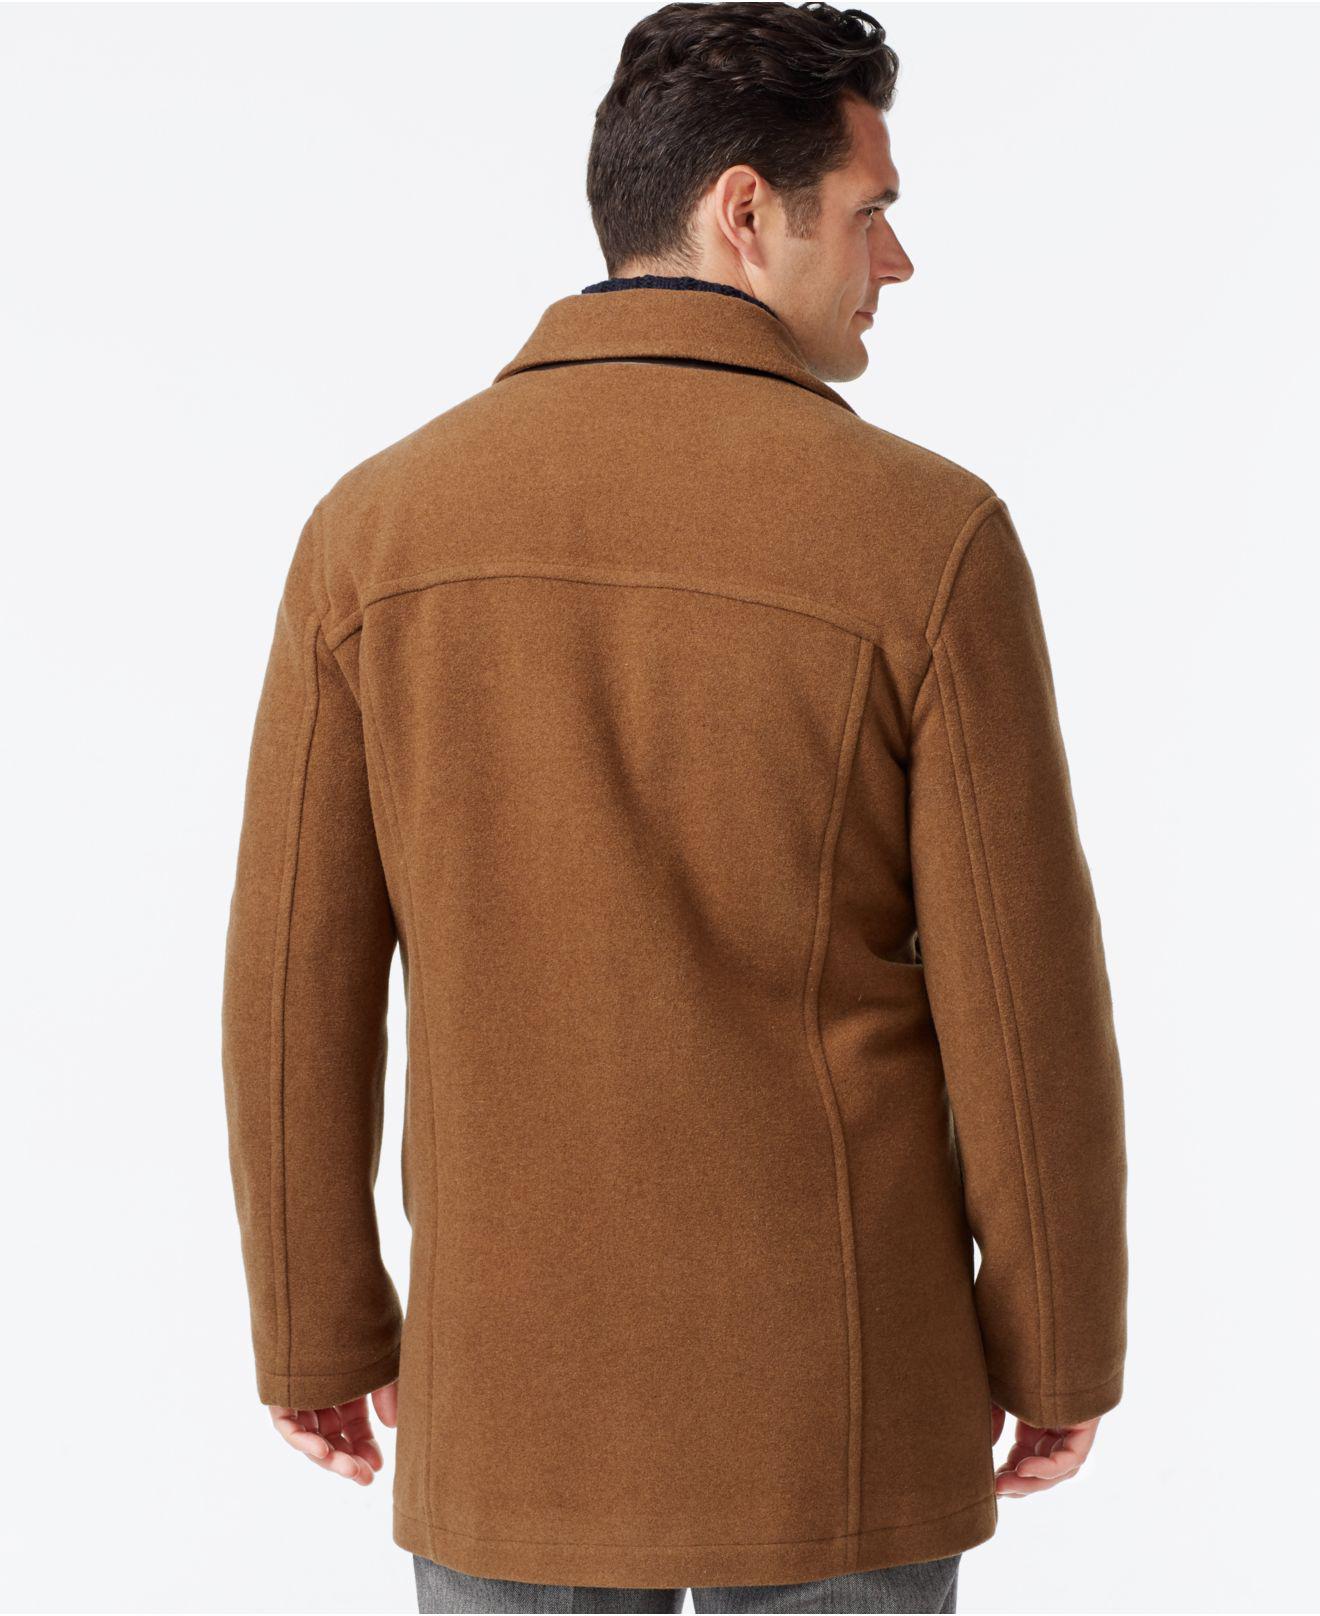 Lyst - Cole Haan Wool-blend Coat in Brown for Men